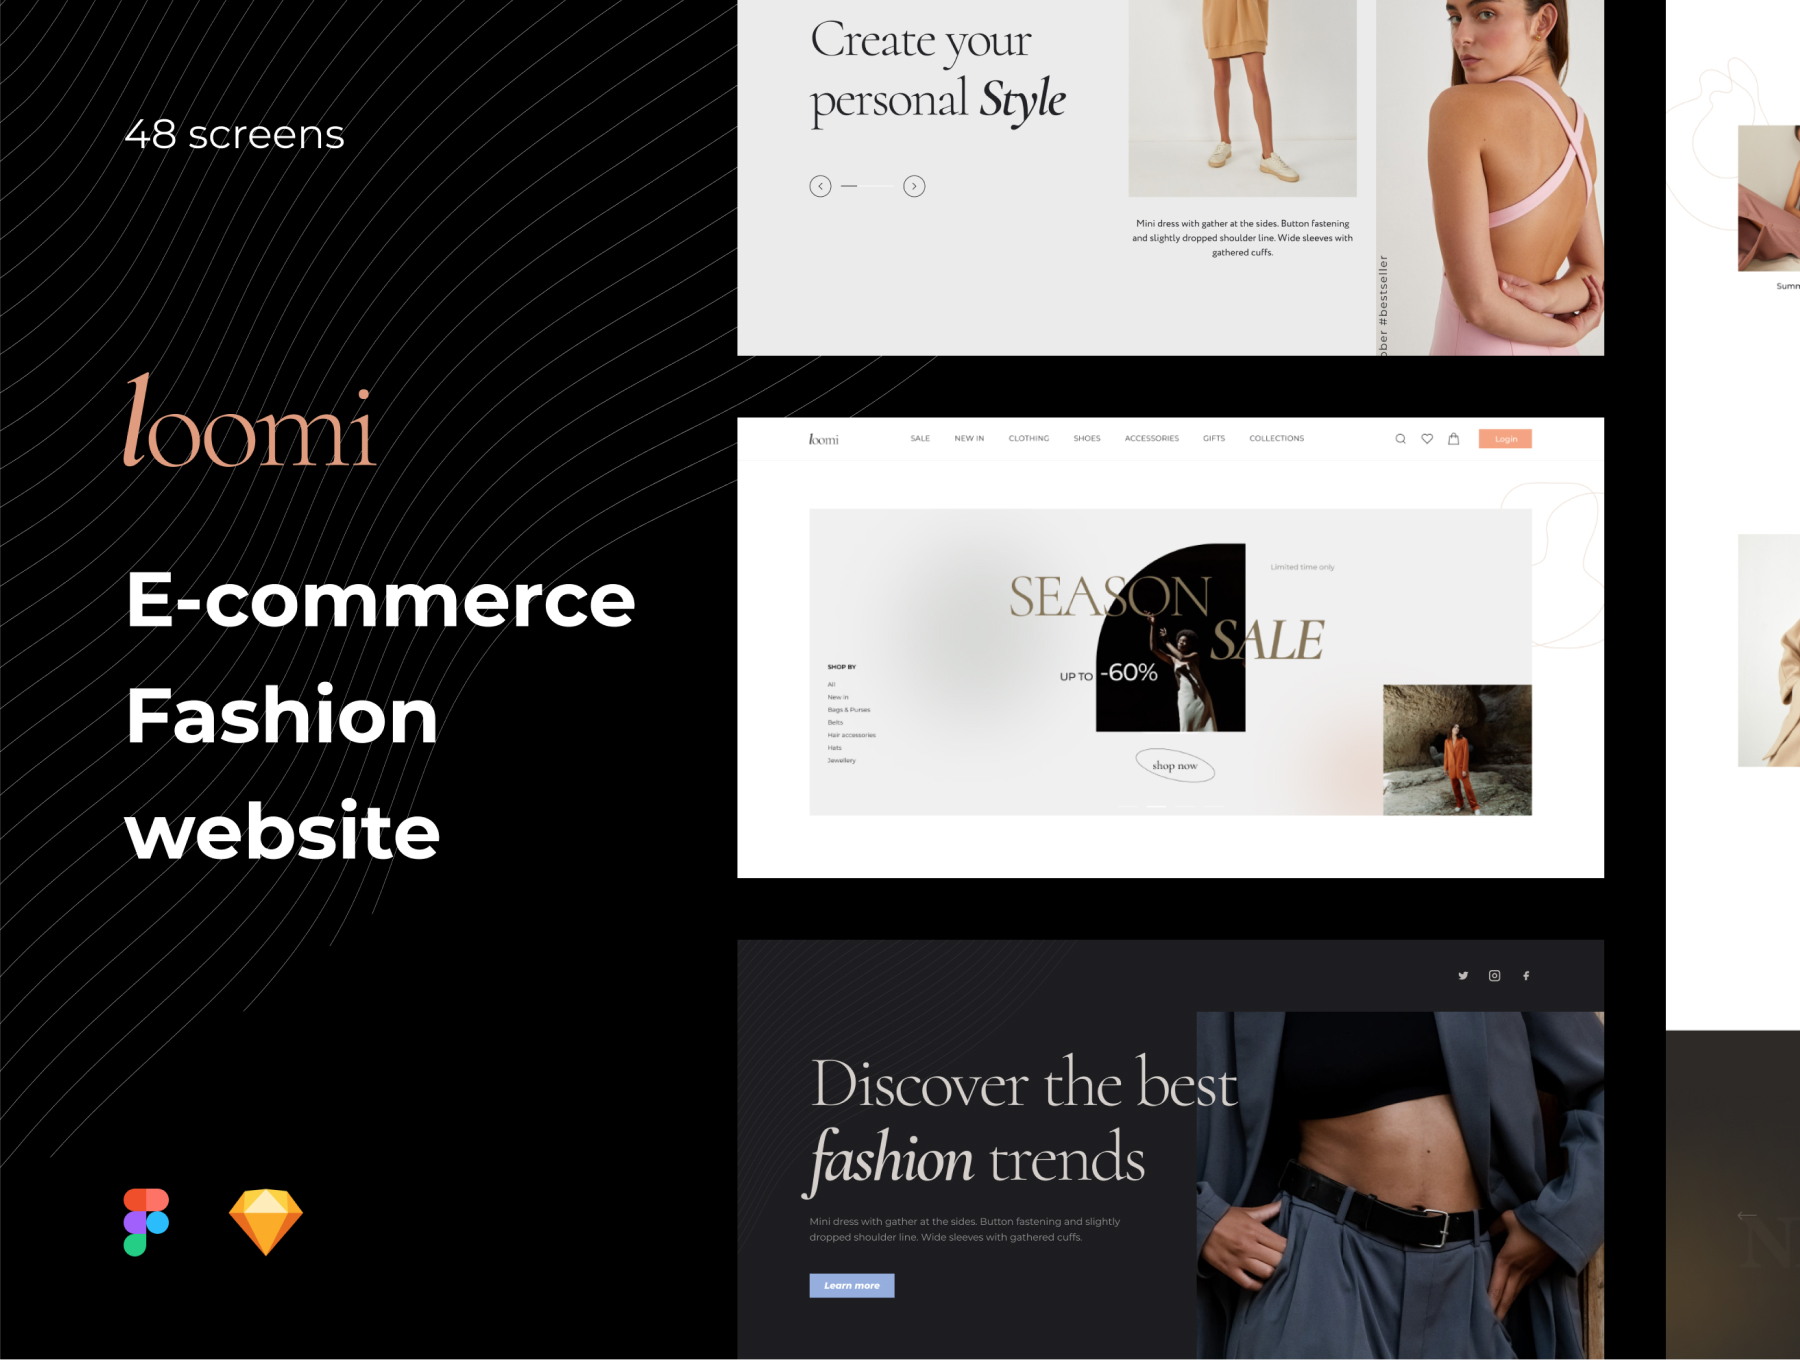 优雅时尚大牌电子商务网站模板UI套件素材 Loomi